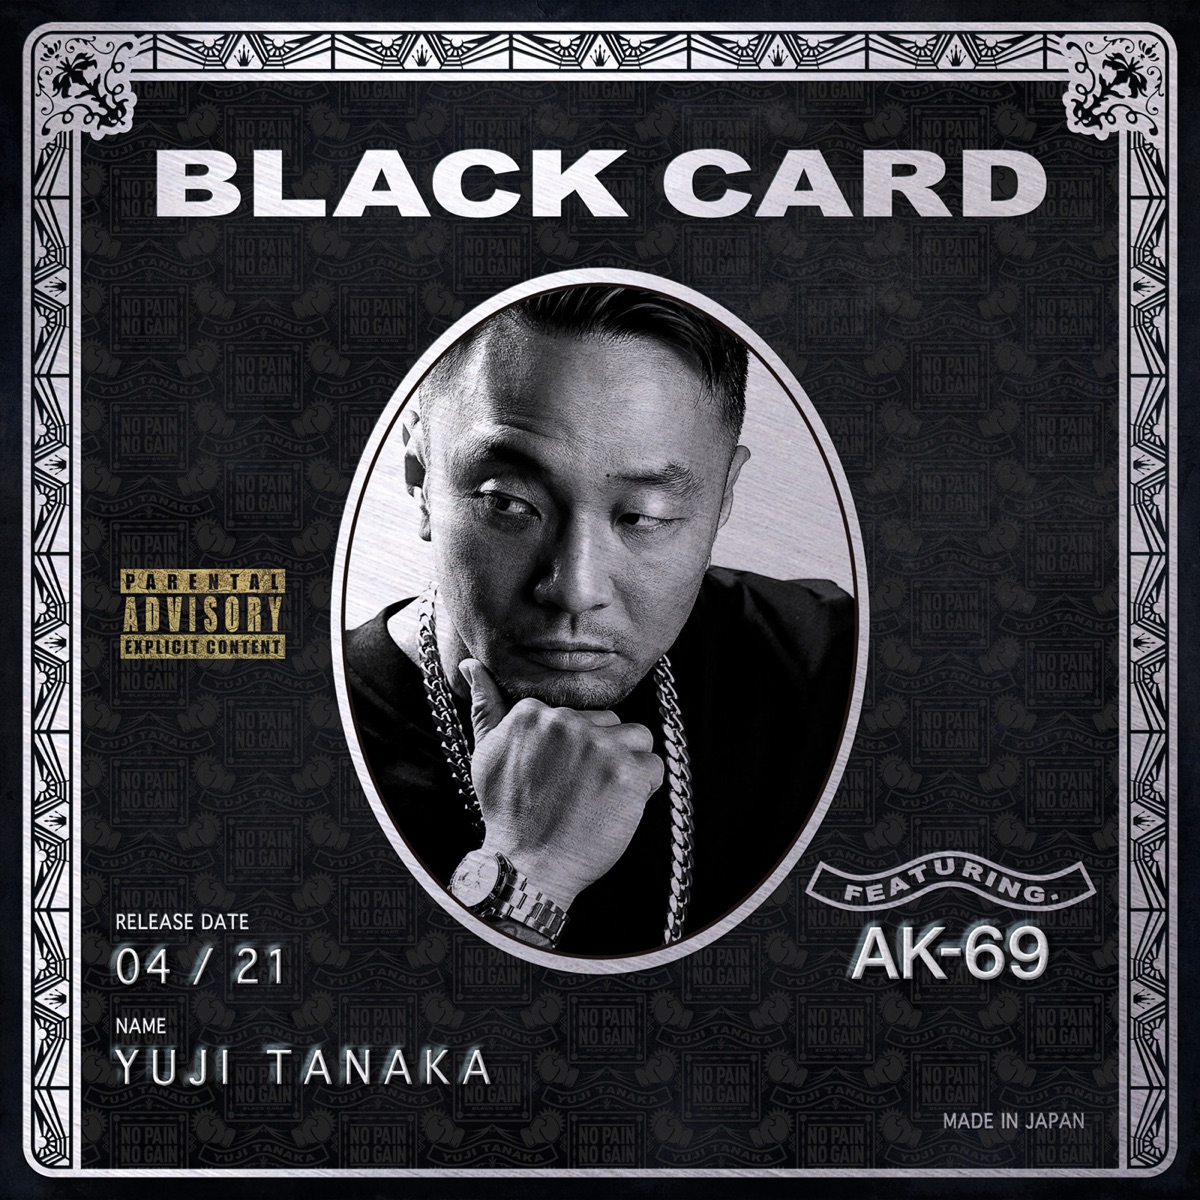 『田中雄士 - BLACK CARD feat. AK-69』収録の『BLACK CARD feat. AK-69』ジャケット